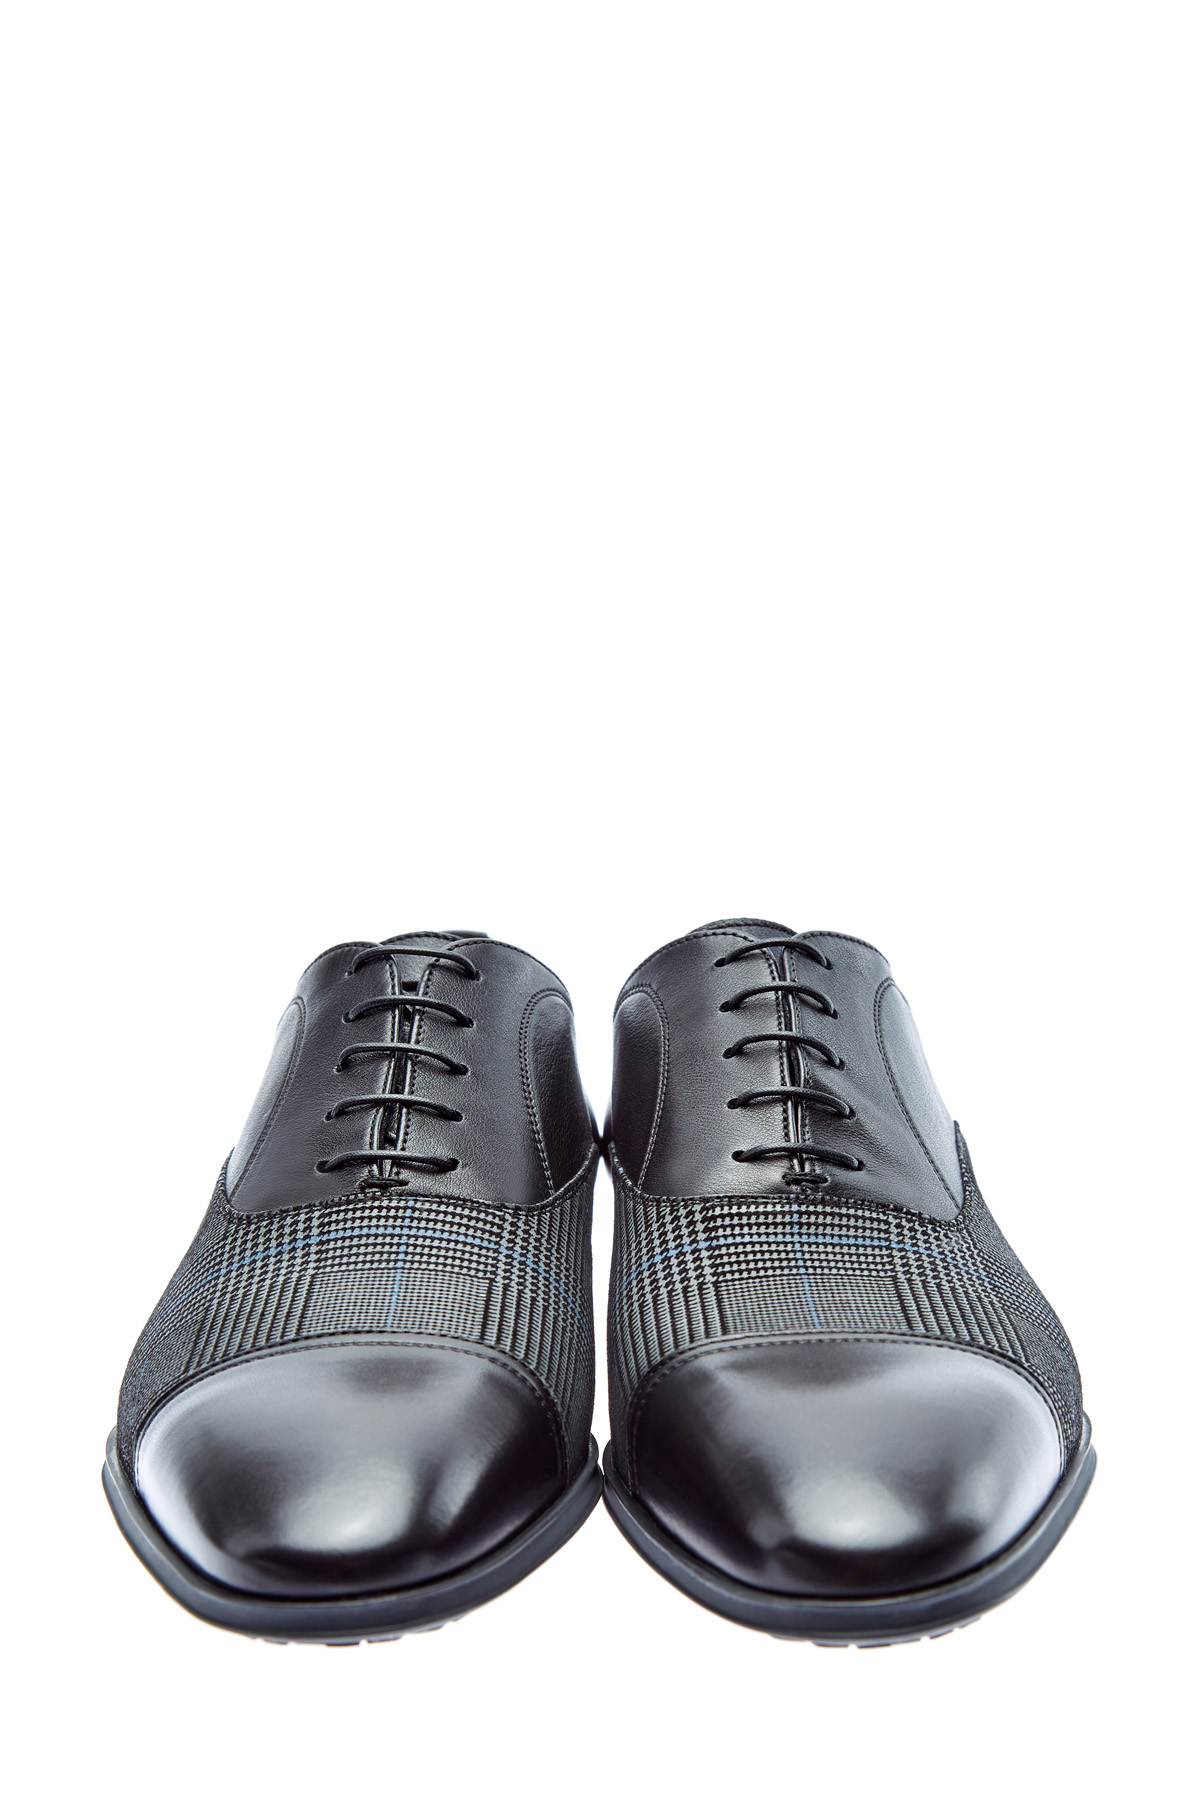 Туфли из кожи и ткани с принтом «Принц Уэльский» MORESCHI, цвет мульти, размер 40.5 - фото 6